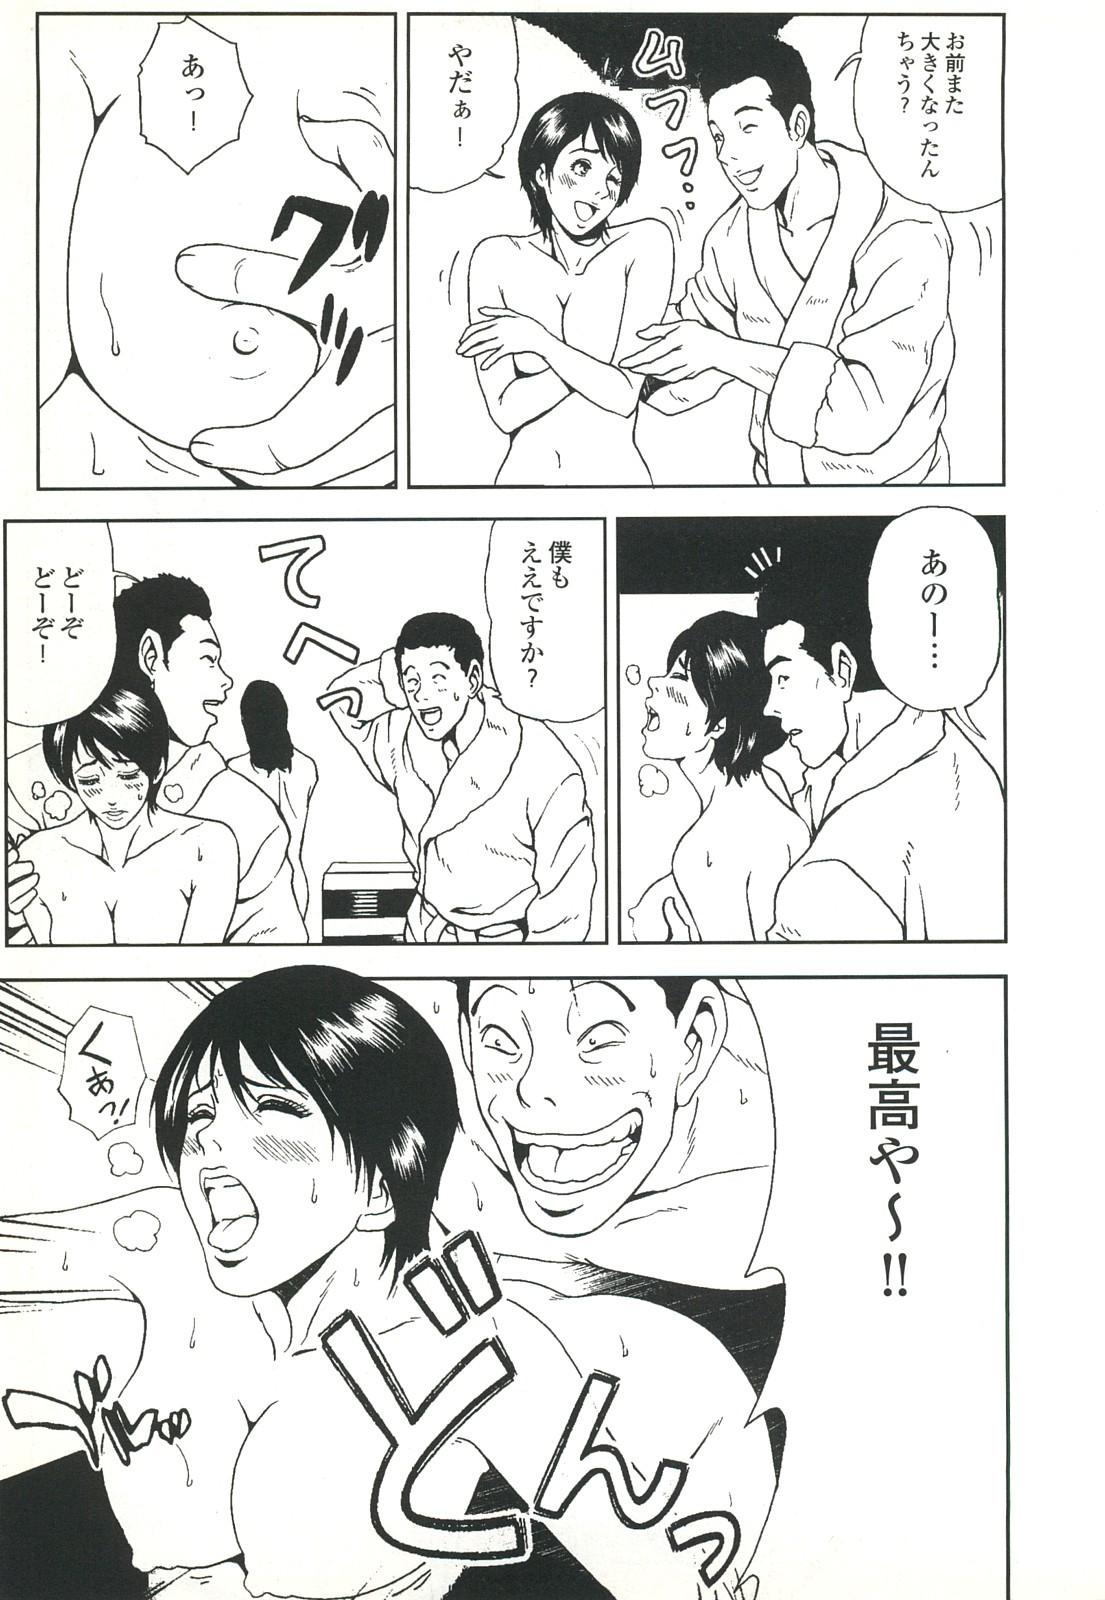 コミック裏モノJAPAN Vol.18 今井のりたつスペシャル号 70